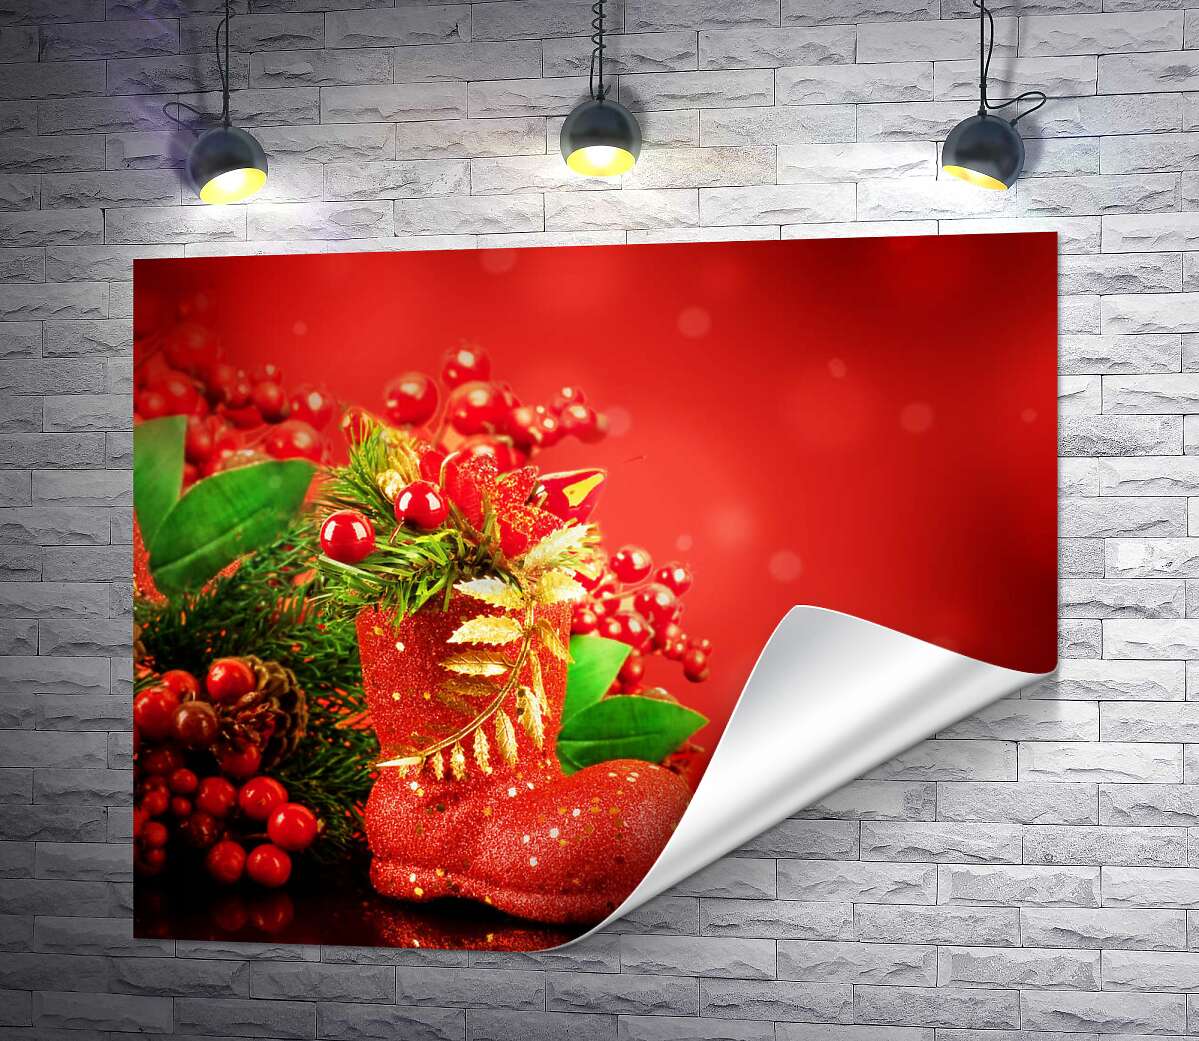 печать Красный сапожок возле рождественского букета из веток елки и ягод омелы